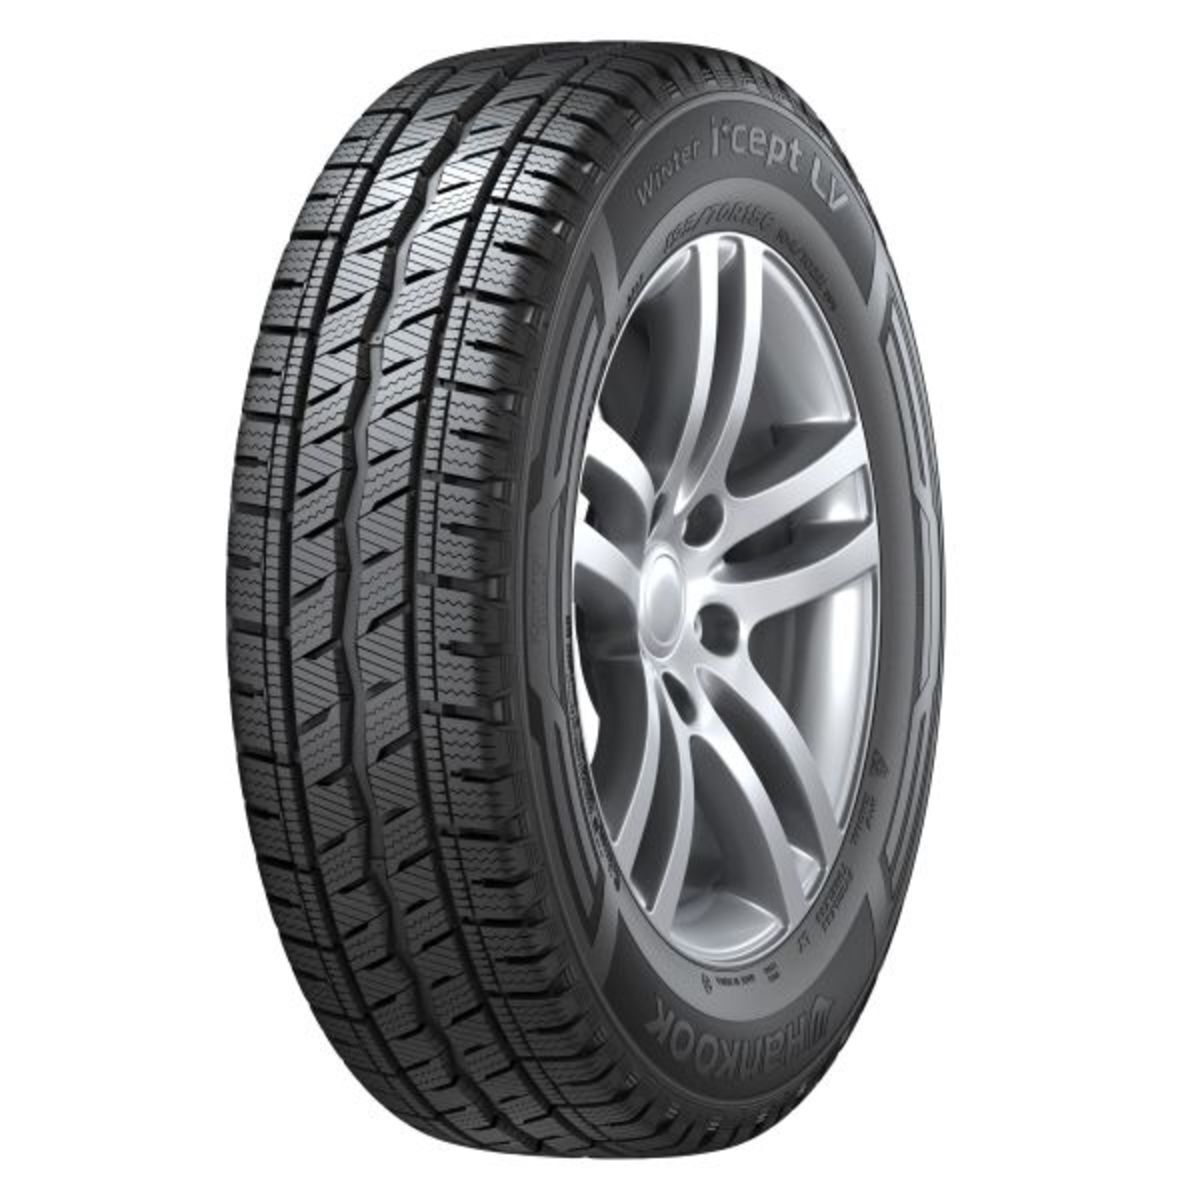 Neumáticos de invierno HANKOOK Winter I*cept LV RW12 185/80R14C, 102/100R TL